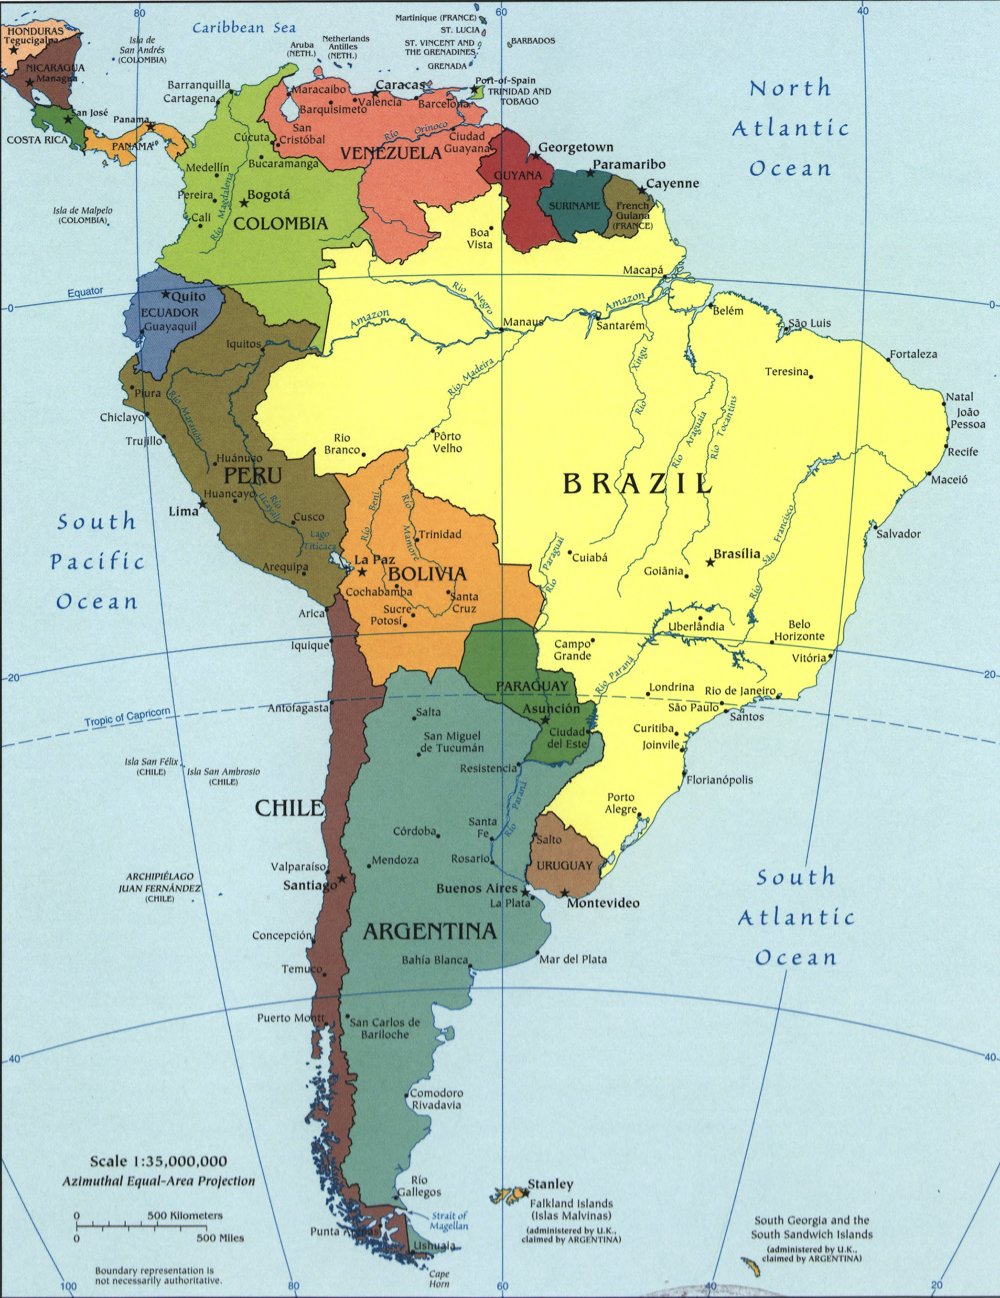 Bản đồ Châu Nam Mỹ phóng to 2024: Bản đồ Châu Nam Mỹ 2024 được phóng to chi tiết, giúp cho các bạn có cái nhìn tổng quan hơn về vùng đất này. Thông qua bản đồ, bạn có thể khám phá tất cả các địa danh và các khu vực nổi tiếng, từ nam đến bắc của châu Mỹ La tinh.